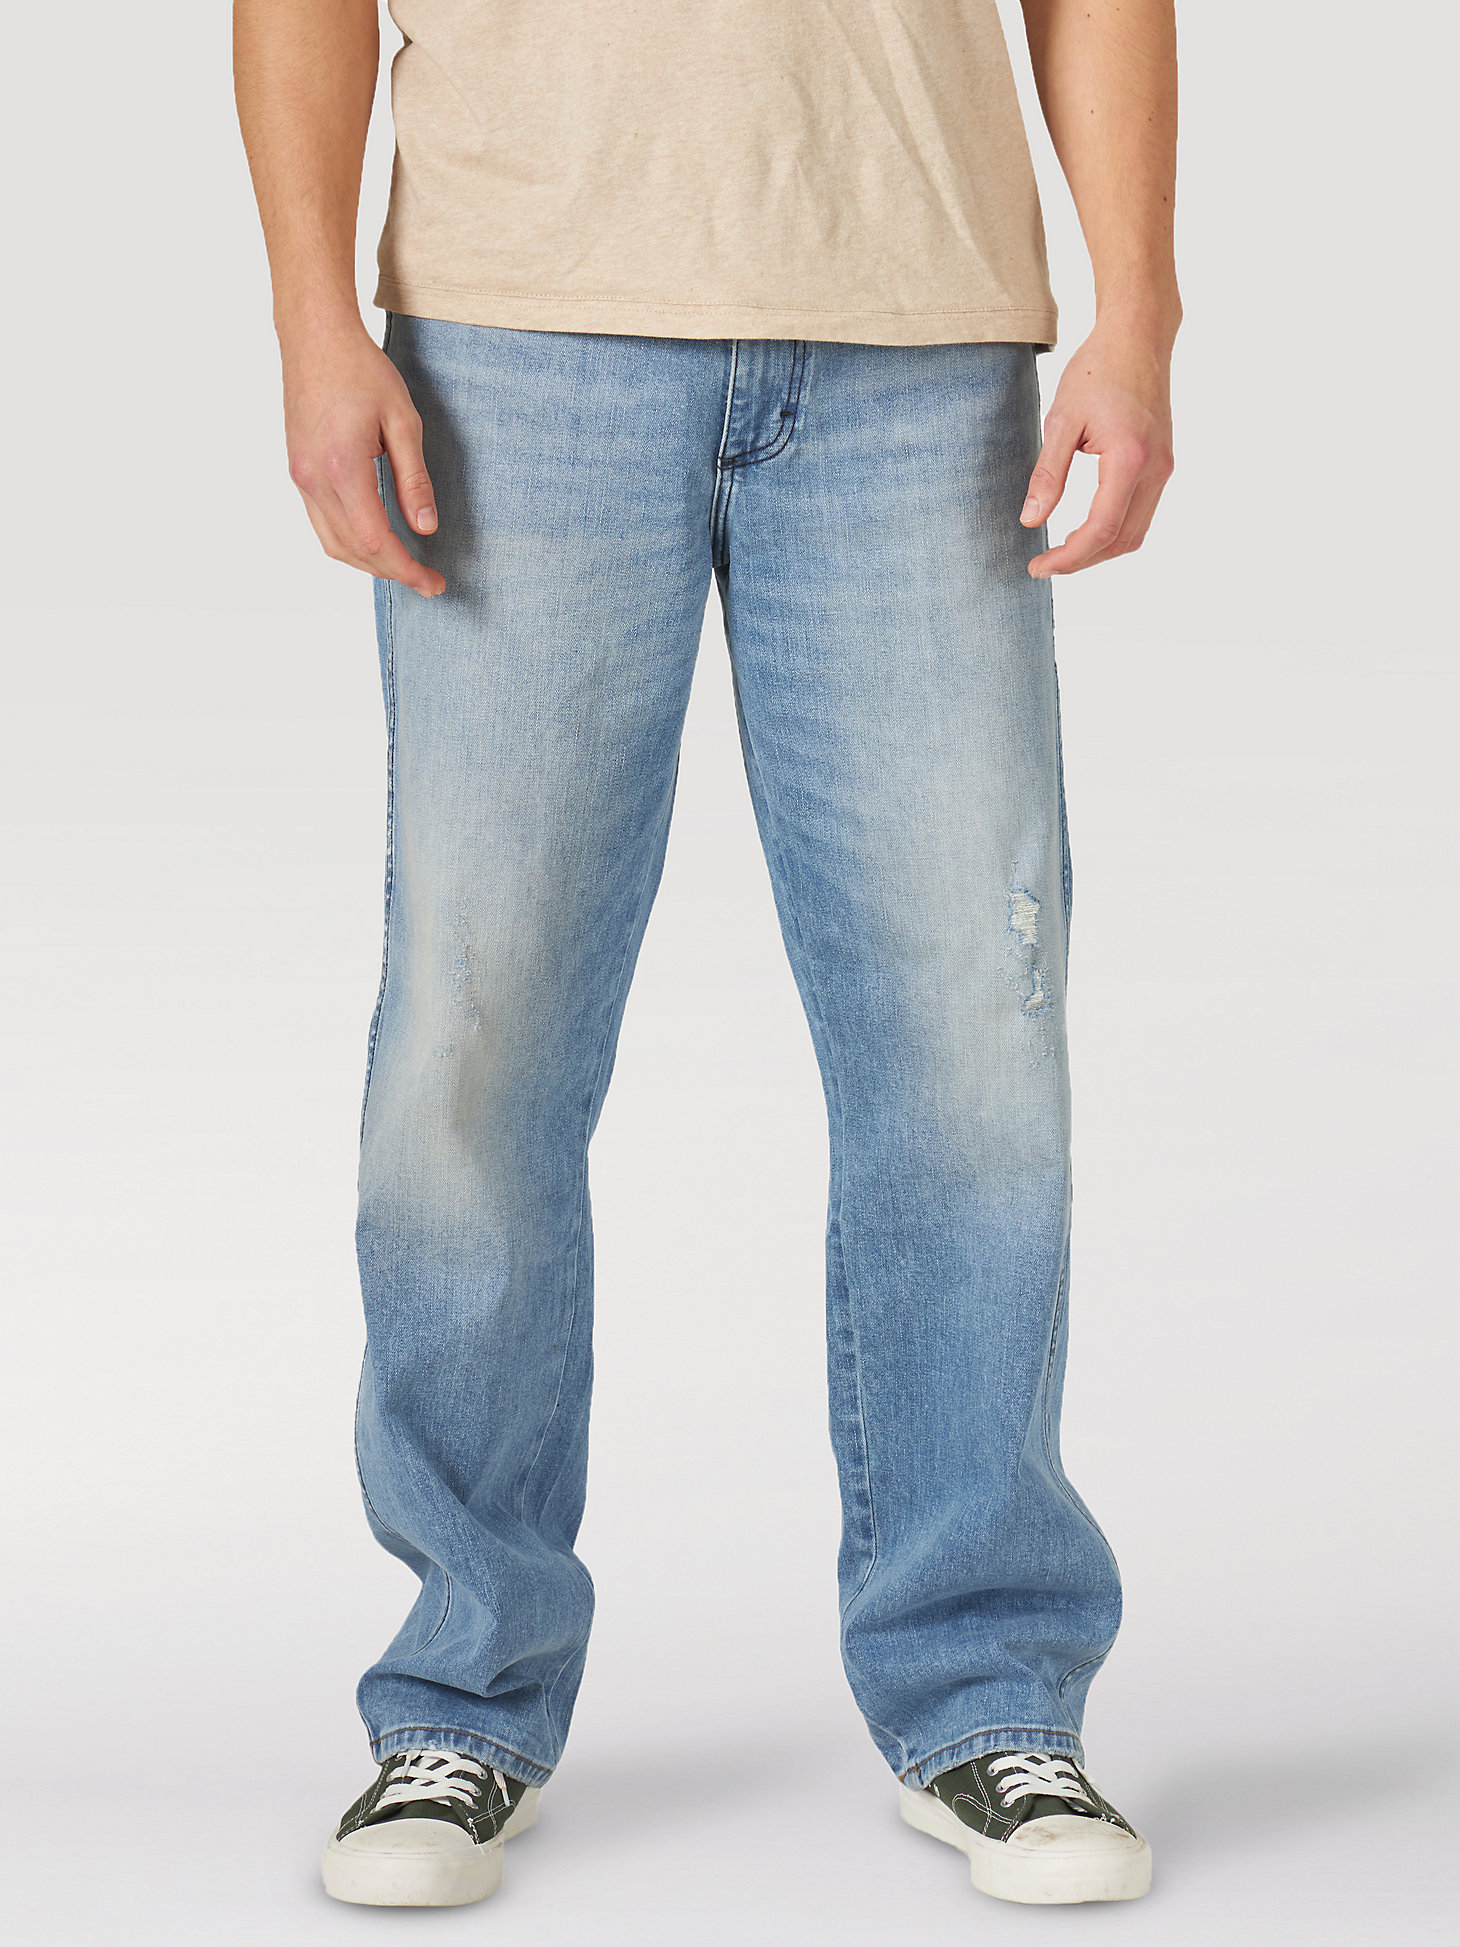 Men's Wrangler® Heritage Redding Loose Fit Jean in Sunshine Blue alternative view 10